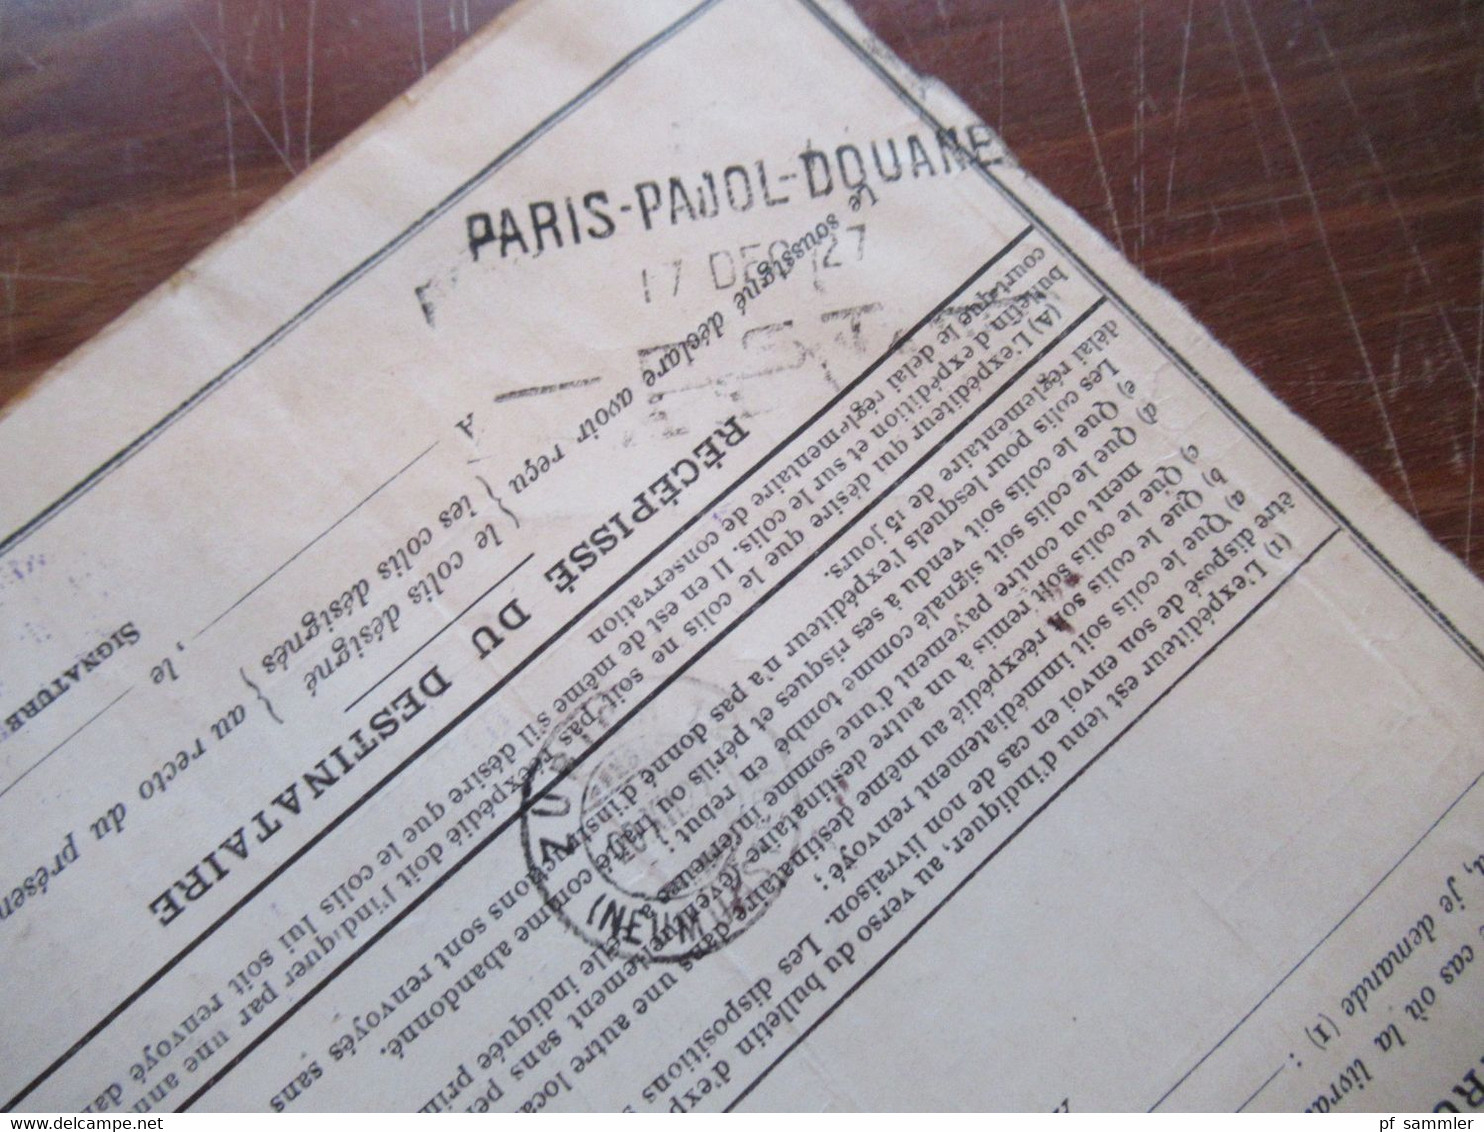 Frankreich 1927 Auslandspaketkarte Colis Postaux In Die Schweiz Valeur Declaree / Paris - Est Mit Vielen Stempeln!! - Lettres & Documents